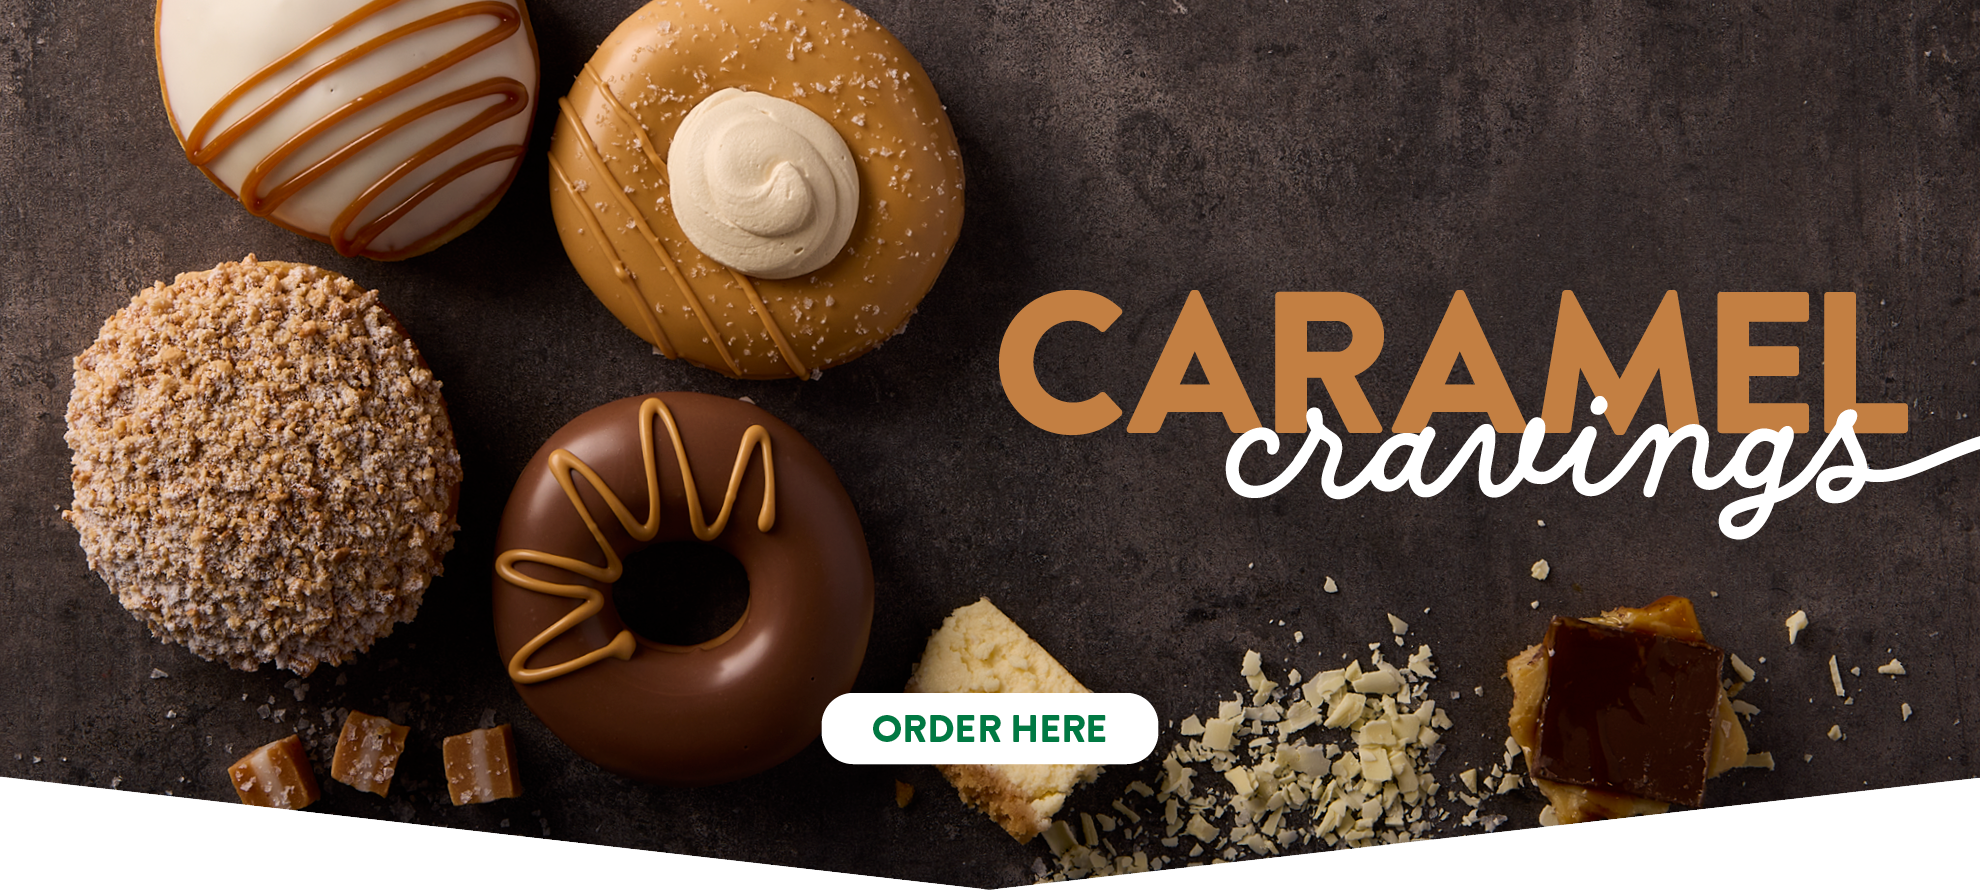 Krispy Kreme Caramel Cravings LTO - KK Website Desktop Banner 1980x890px FINAL